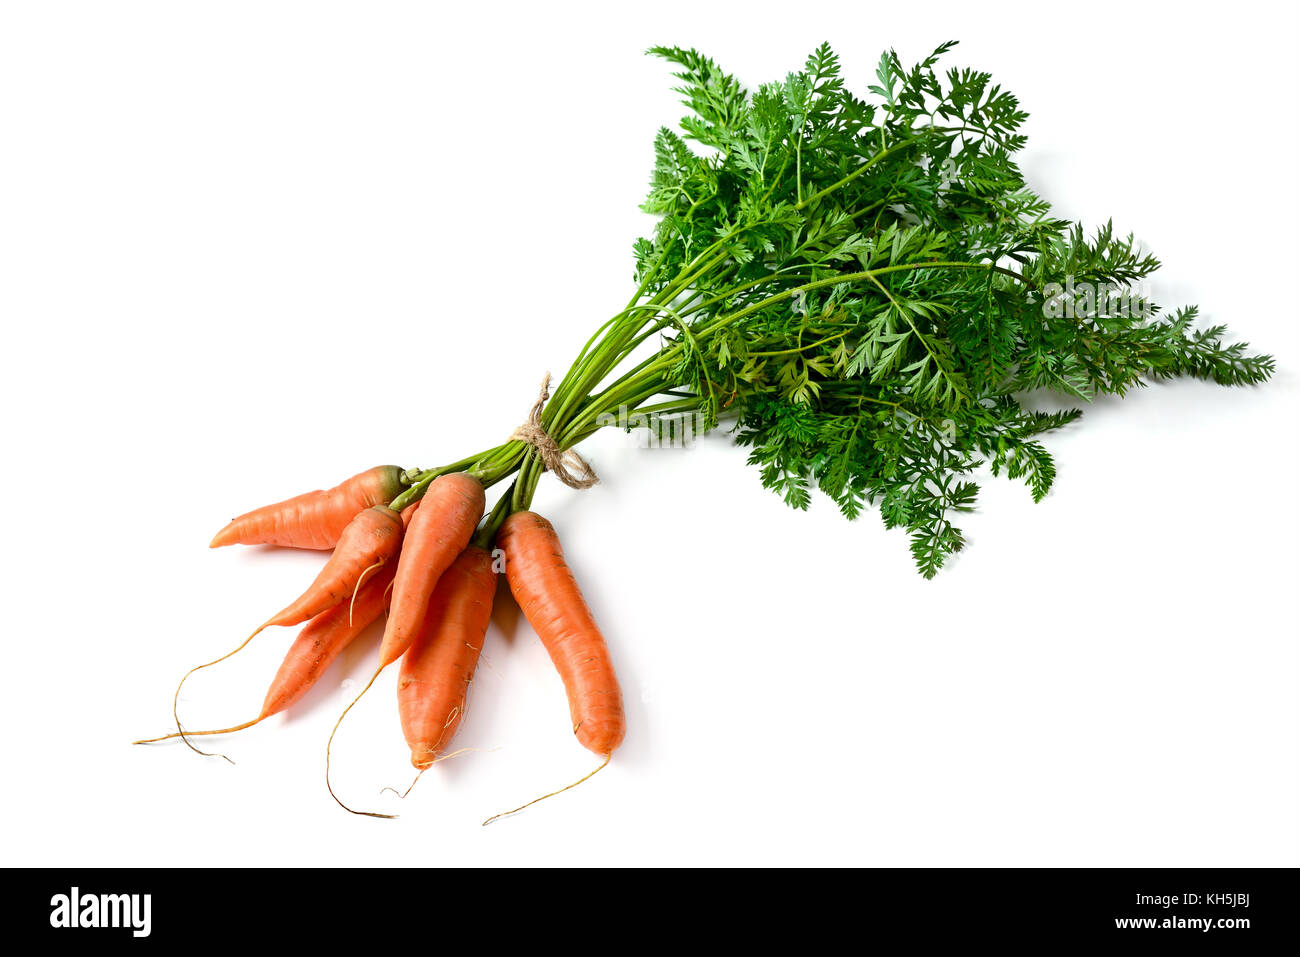 Bündel frische Karotten auf Weiß isoliert. top View. Gemüse aus dem Garten. Stockfoto